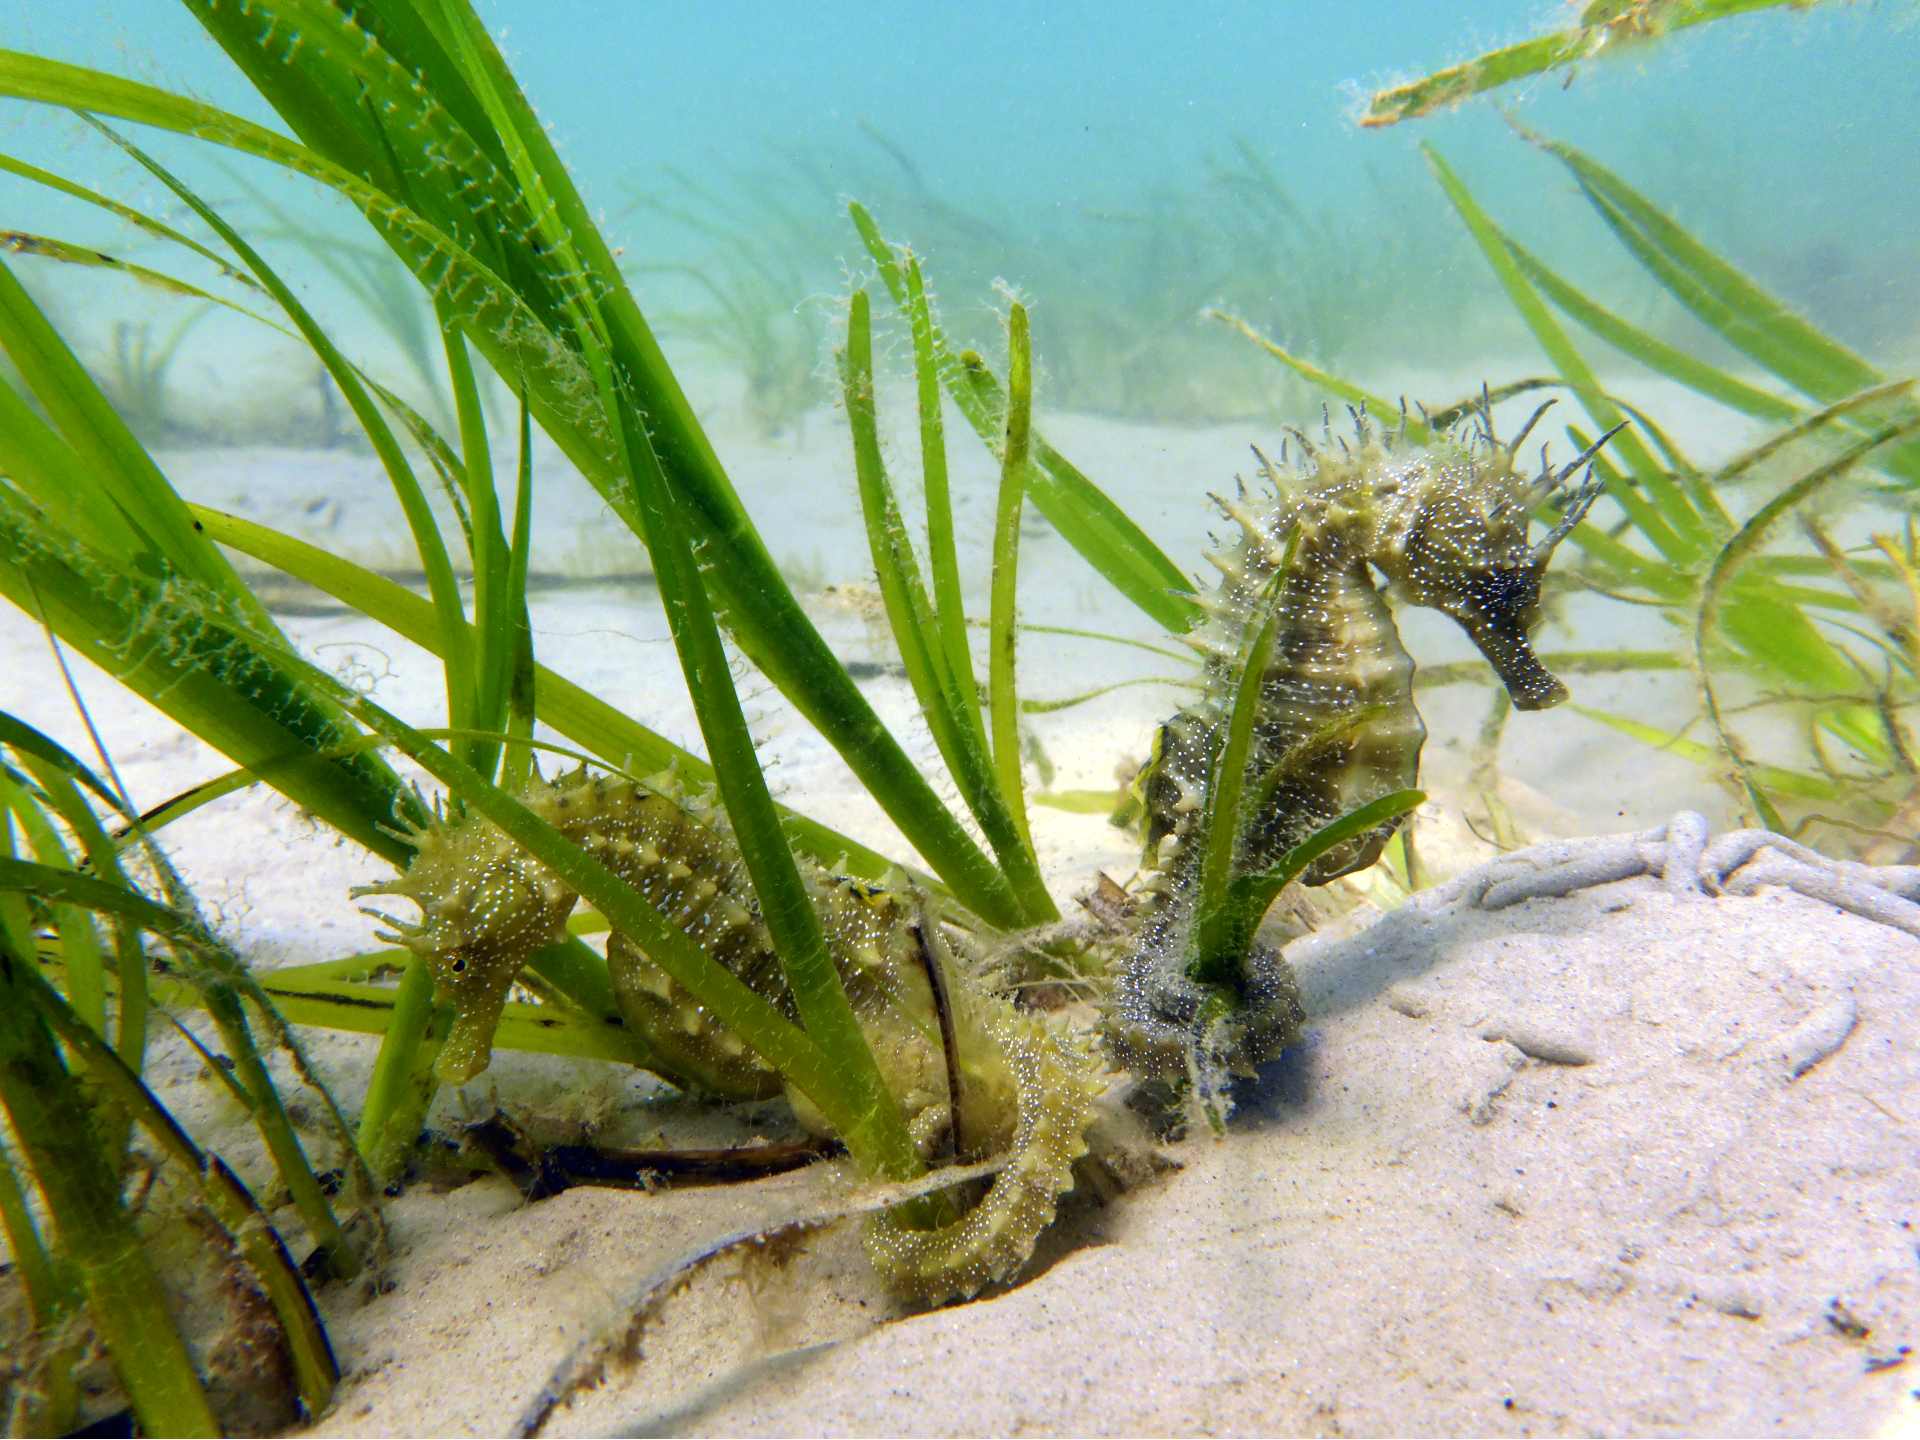 Seahorse haven uživa velik denarni priliv